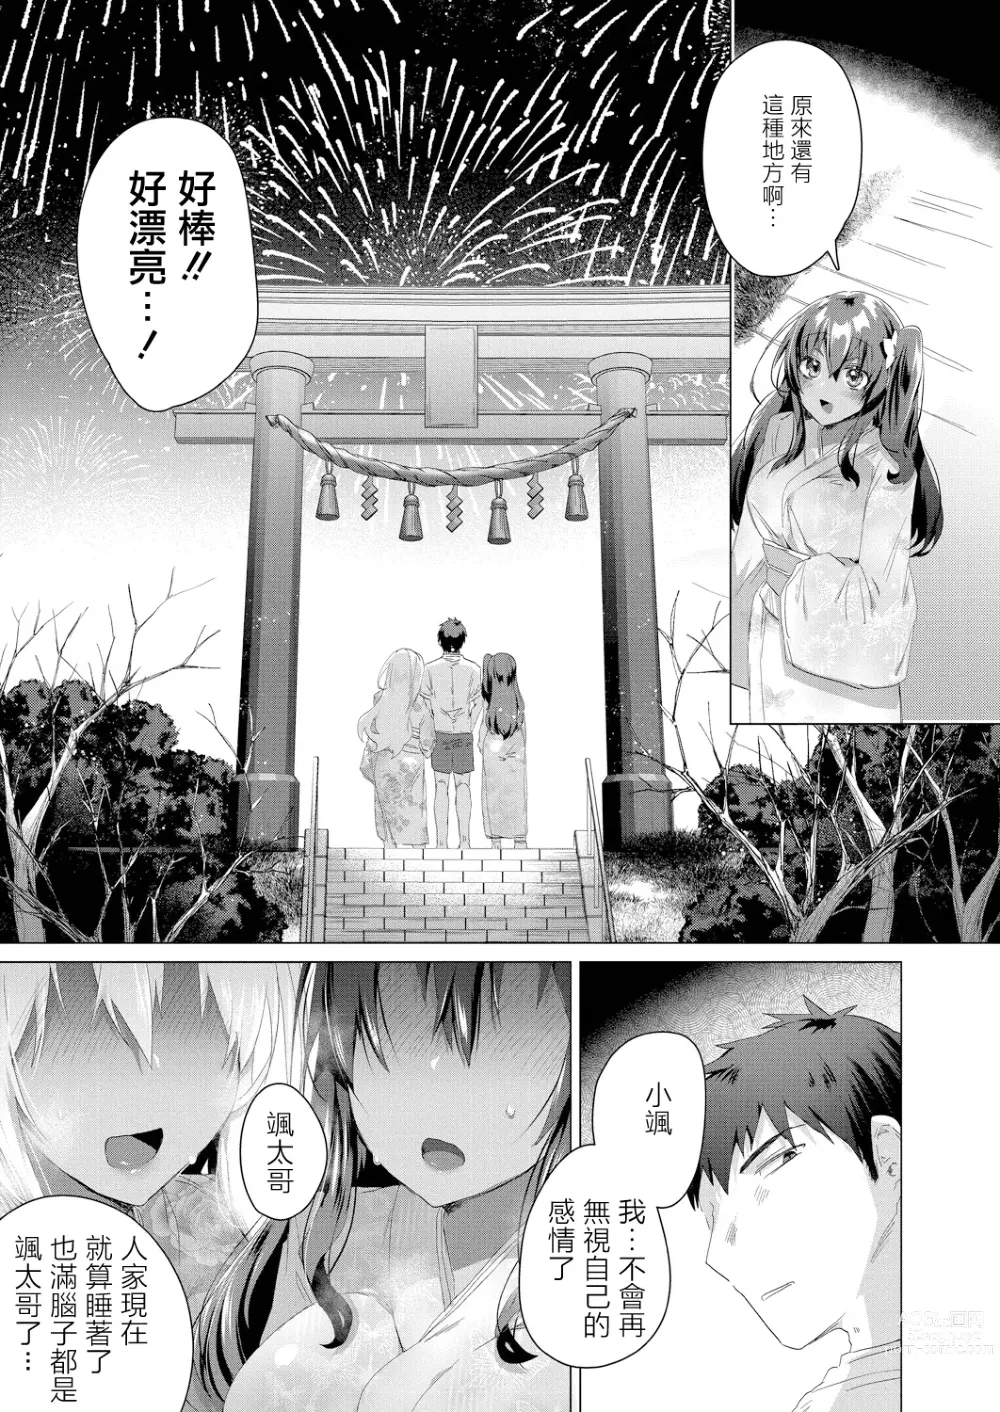 Page 3 of manga Komugiiro no Natsu-tachi Ch. 3